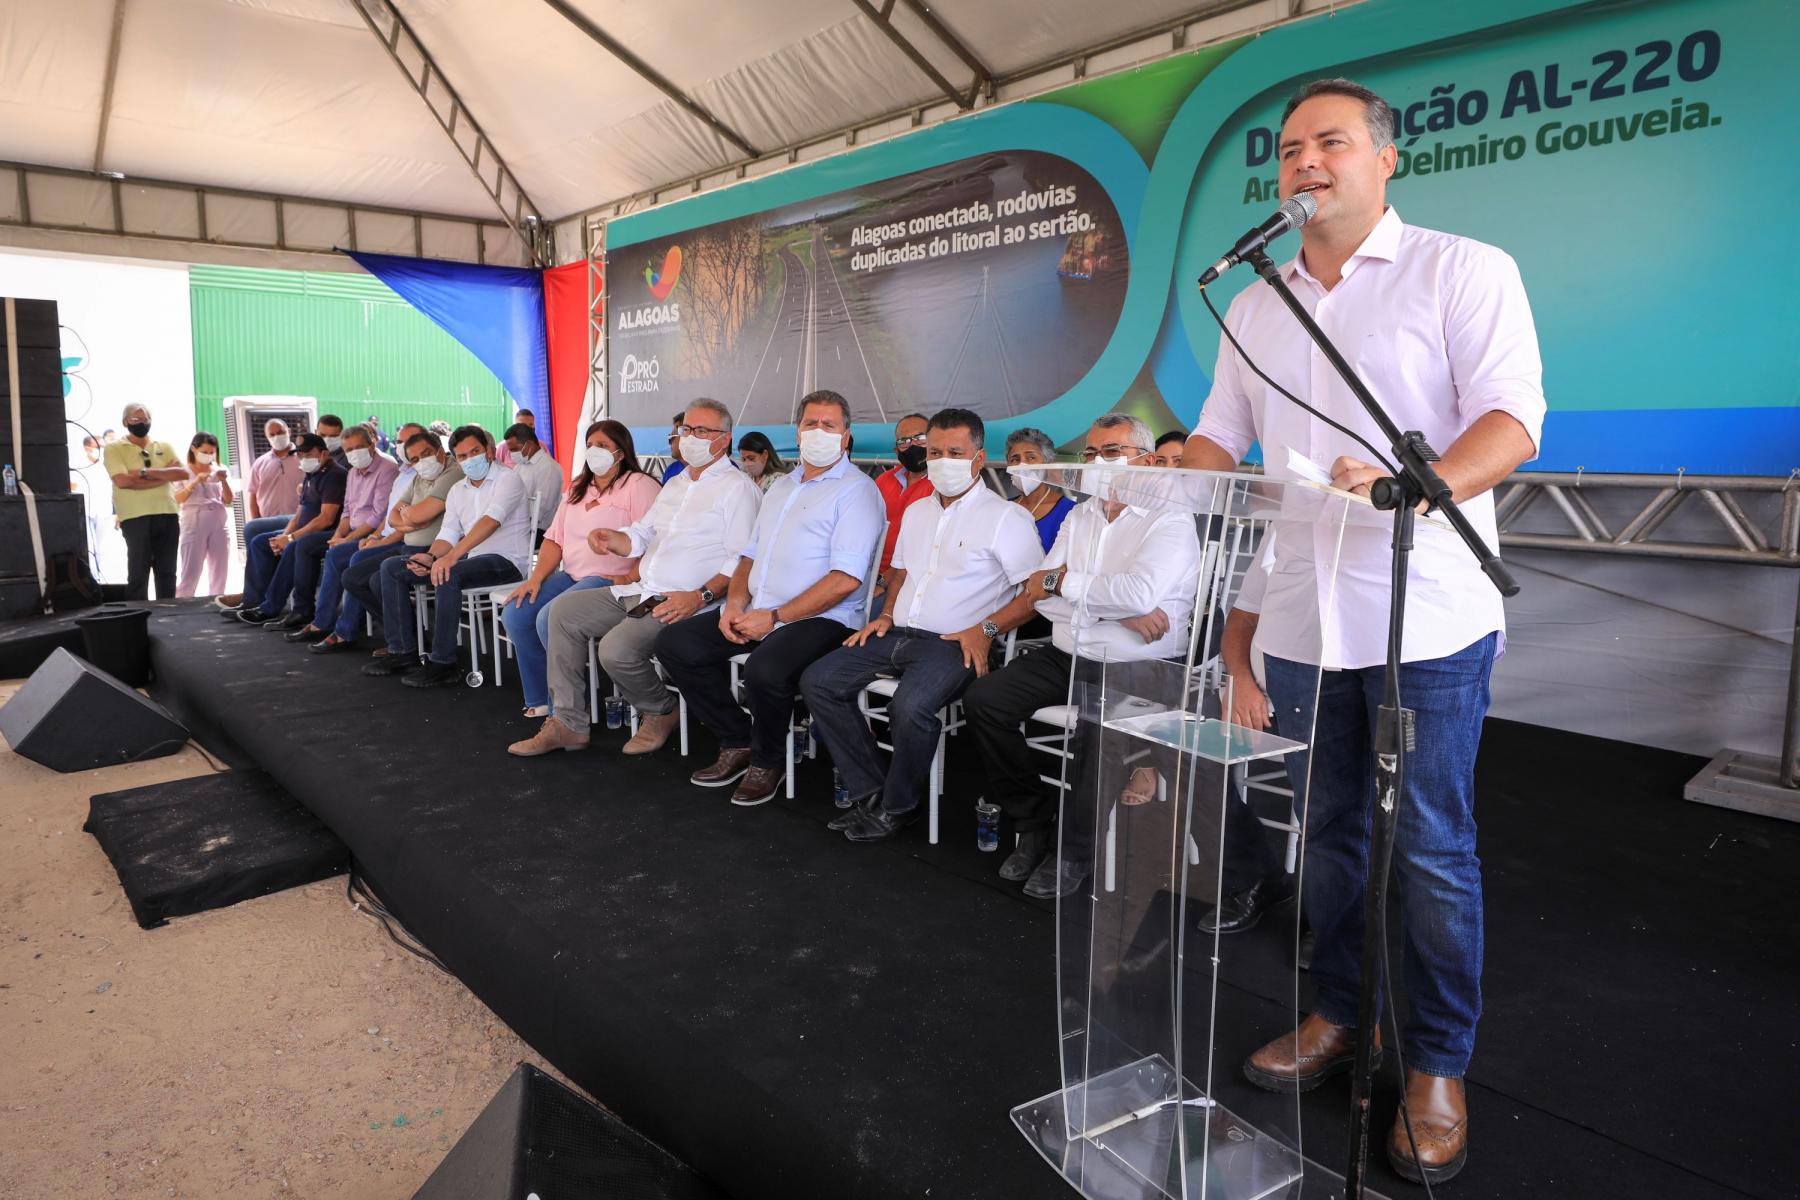 AL-220: maior obra de duplicação de Alagoas tem os últimos 2 trechos autorizados pelo Governo